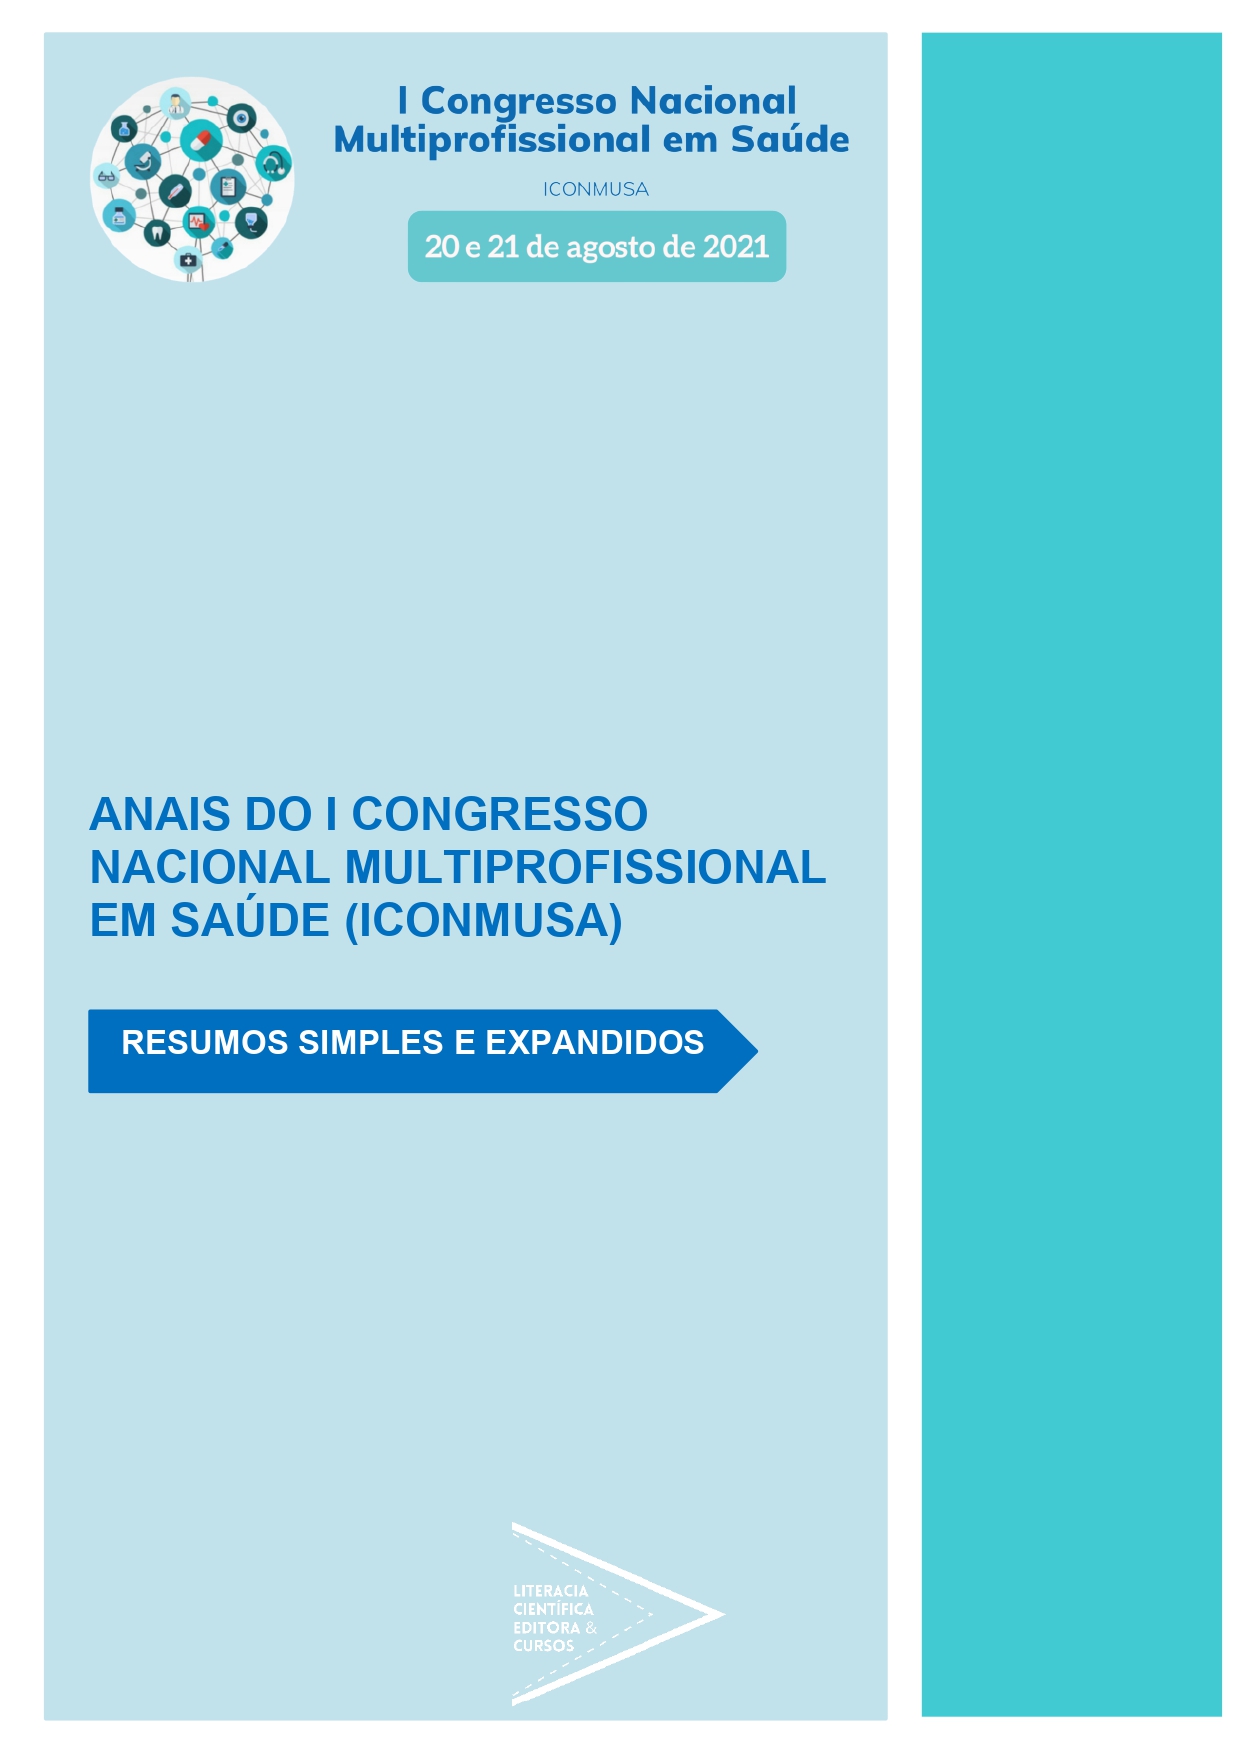 ANAIS DO I CONGRESSO NACIONAL MULTIPROFISSIONAL EM SAÚDE (ICONMUSA): RESUMOS SIMPLES E EXPANDIDOS